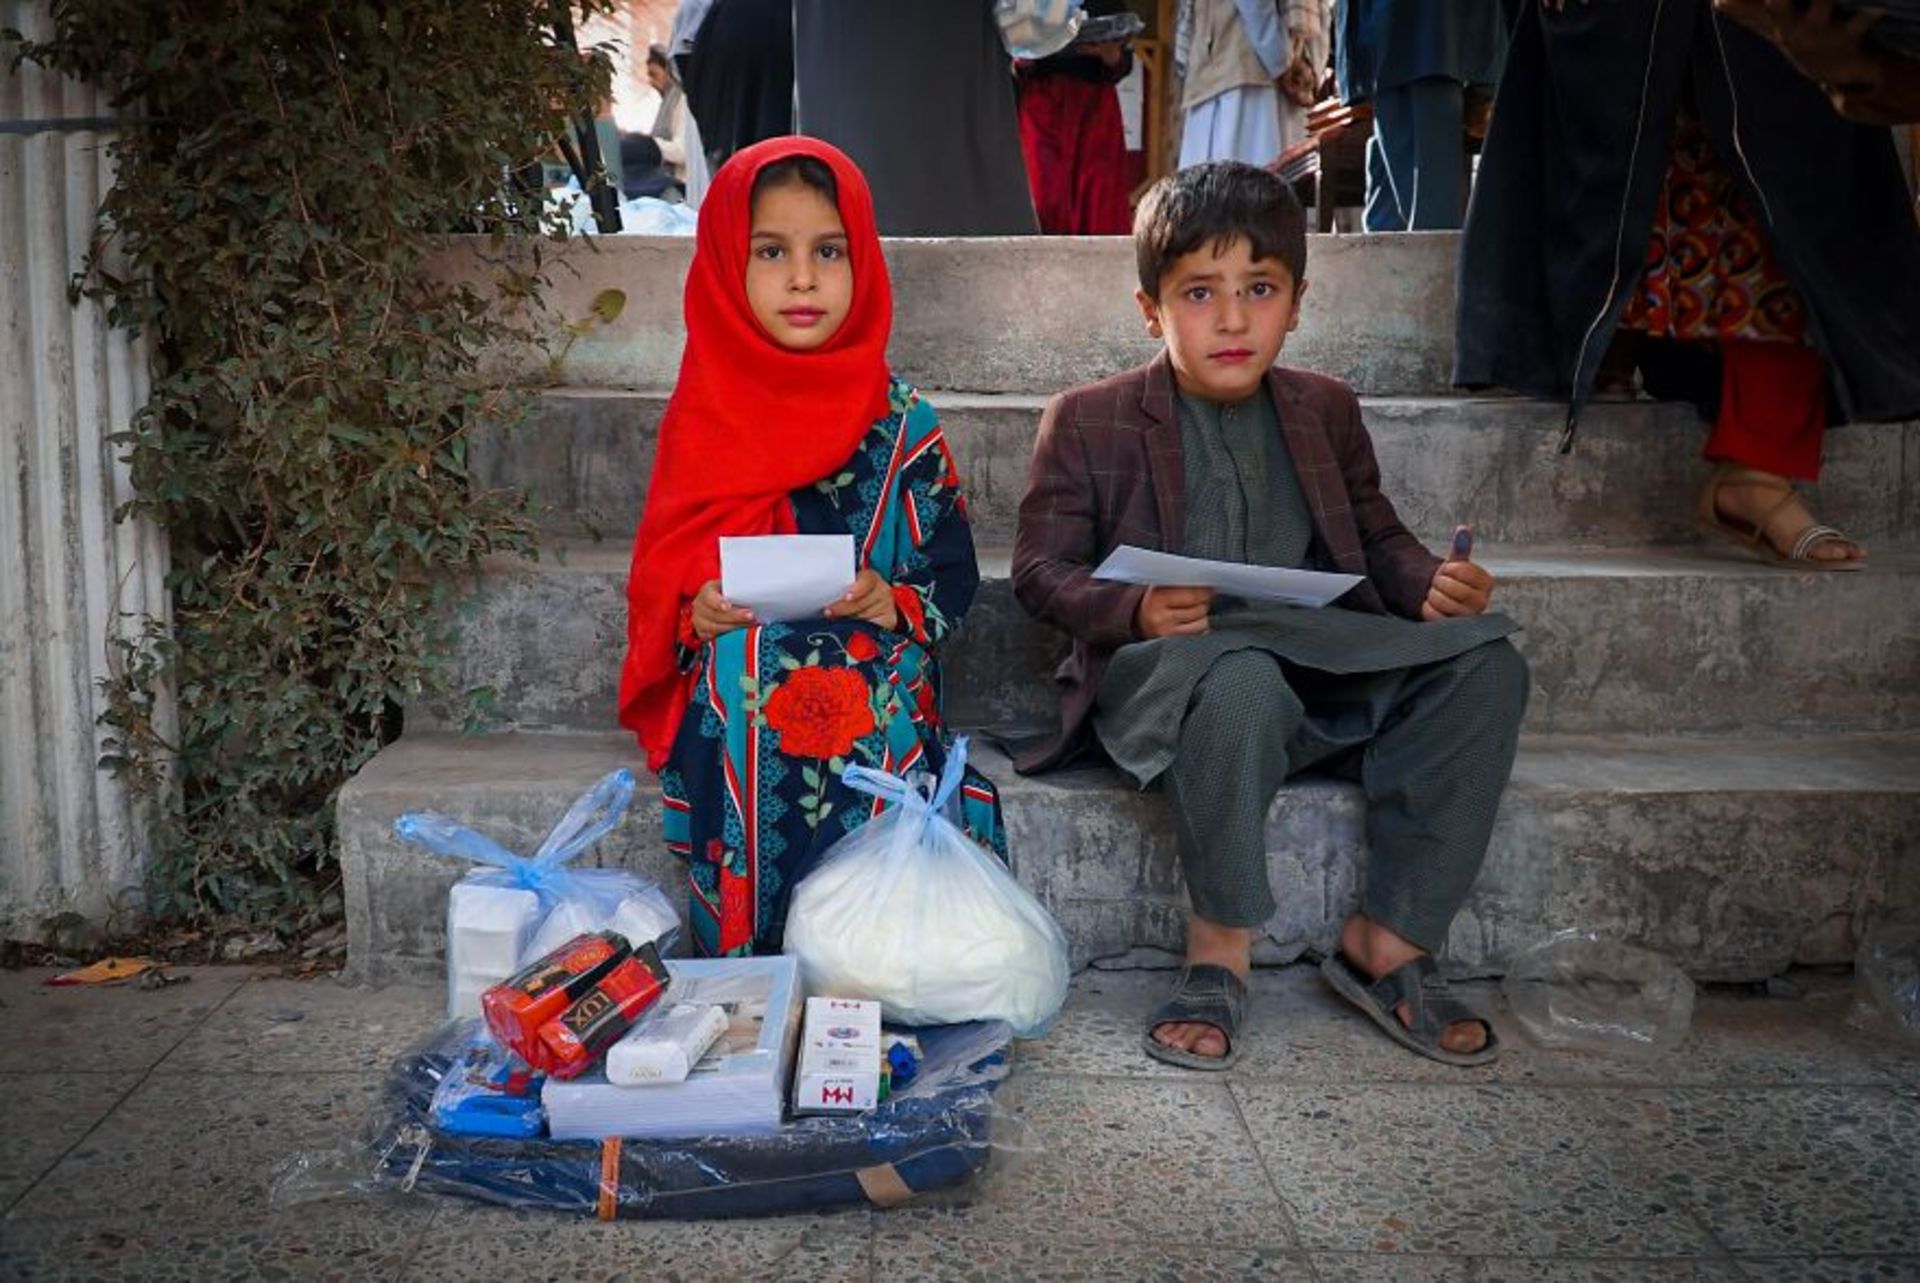 دختر و پسر افغانی روی پله بین جمعیت | دختر روسری قرمز